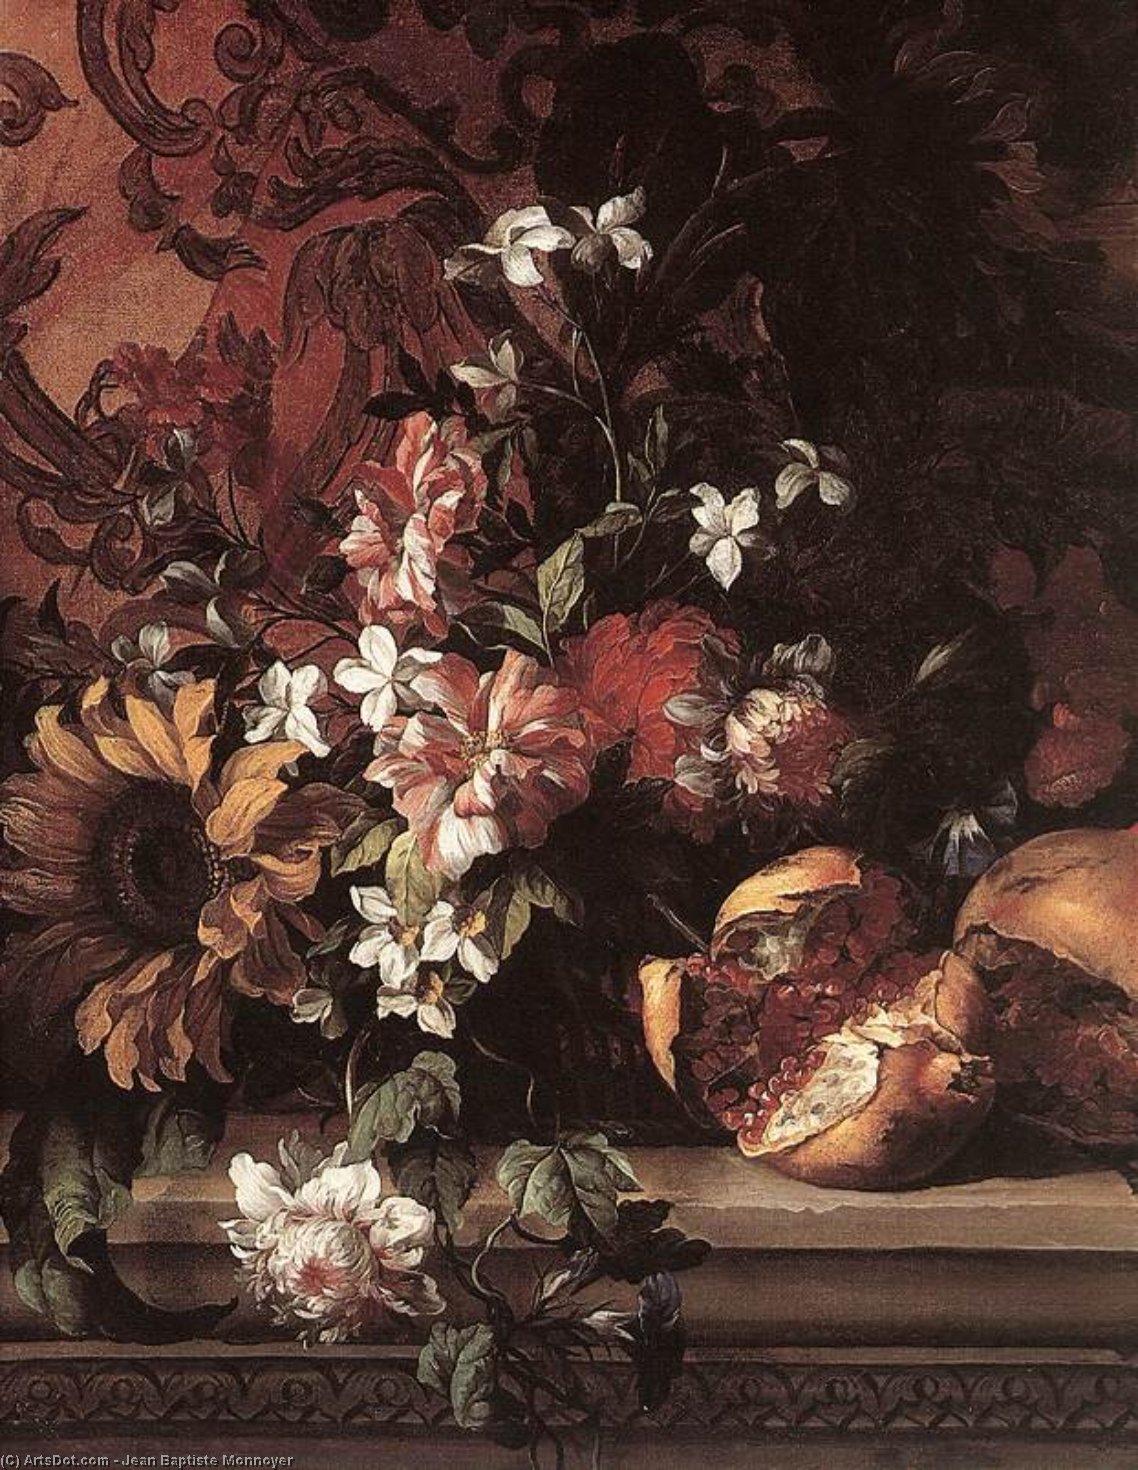 WikiOO.org - Encyclopedia of Fine Arts - Maleri, Artwork Jean Baptiste Monnoyer - Flowers